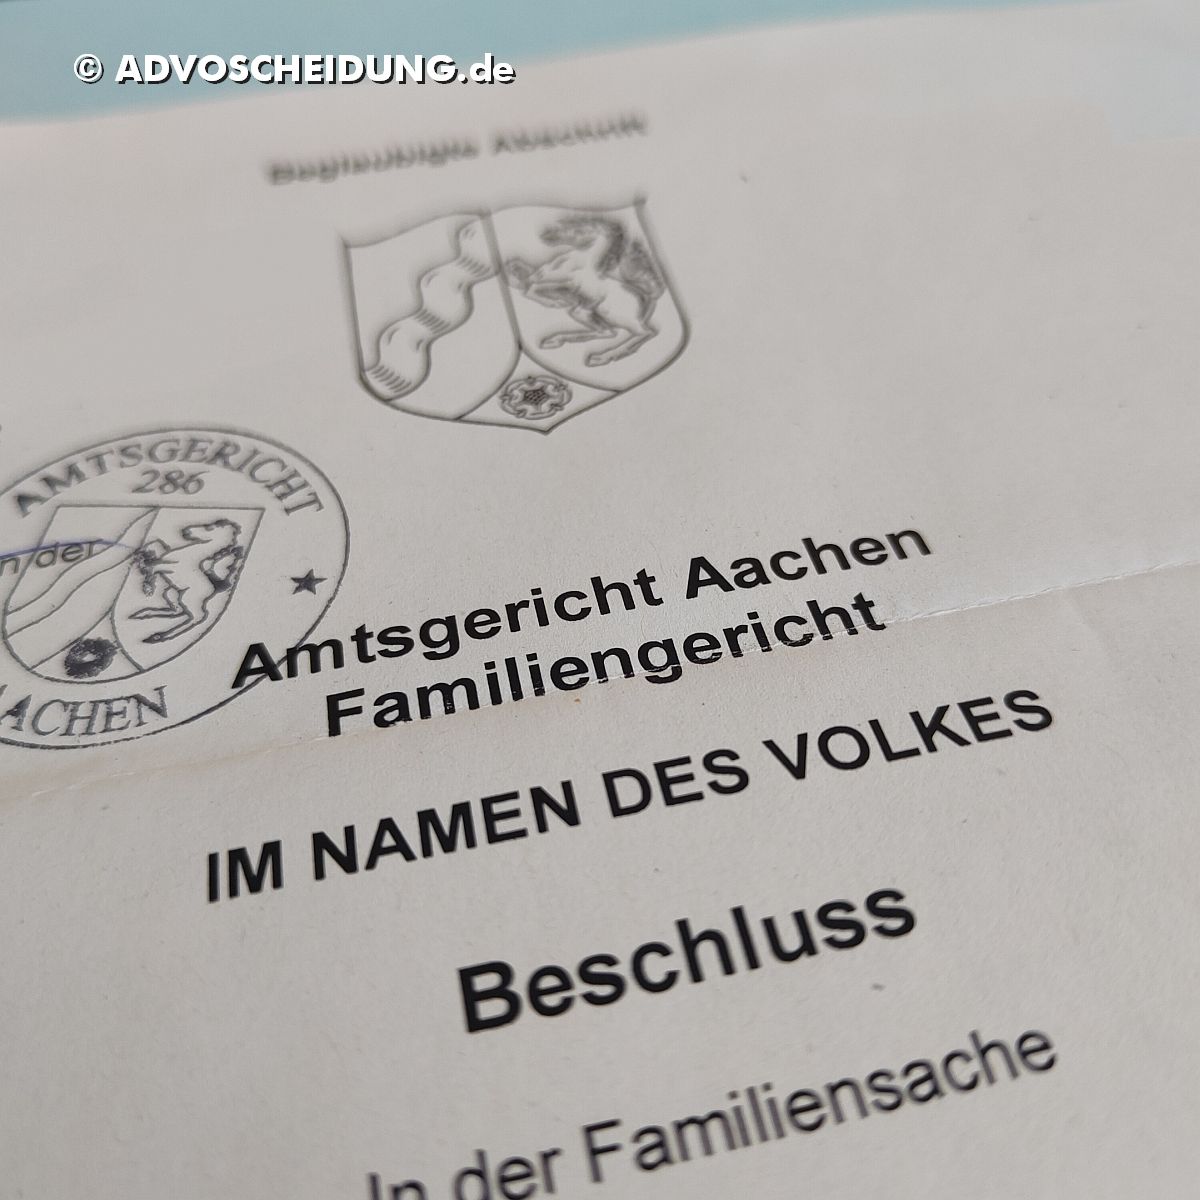 Scheidung online einreichen über das beA durch Anwalt in Aachen